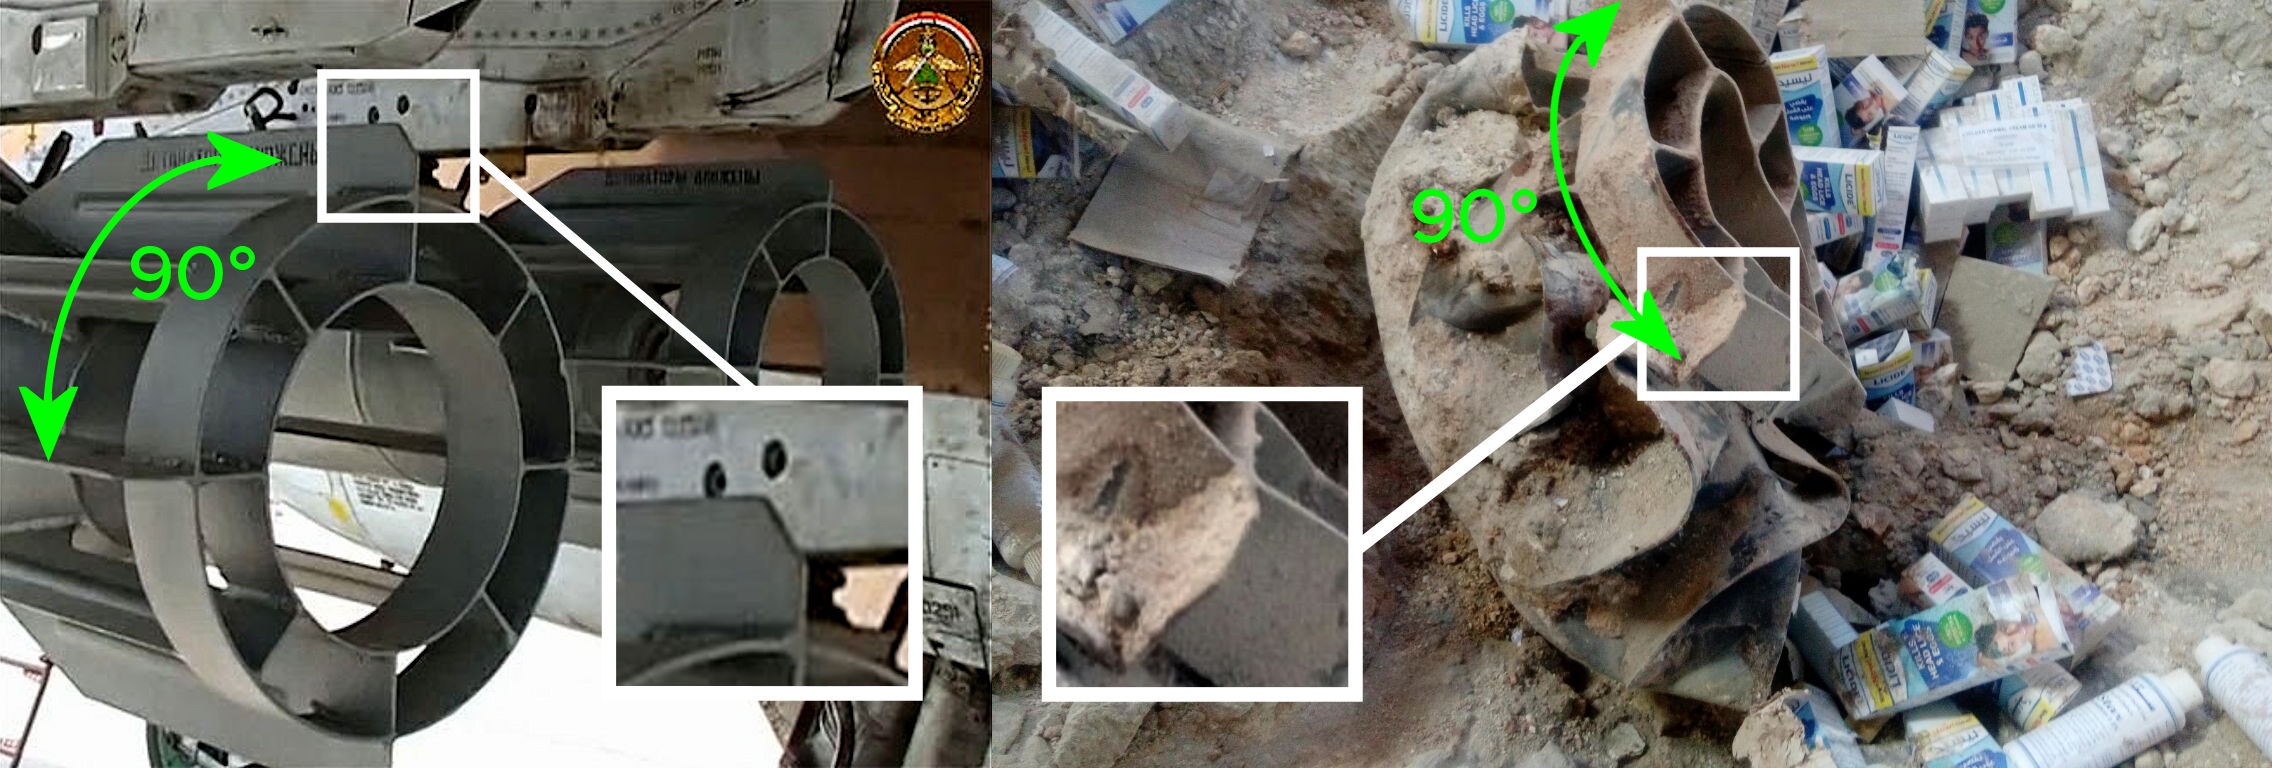 Розслідування Bellingcat: Гумконвой ООН у Сирії знищили російськими бомбами - фото 5